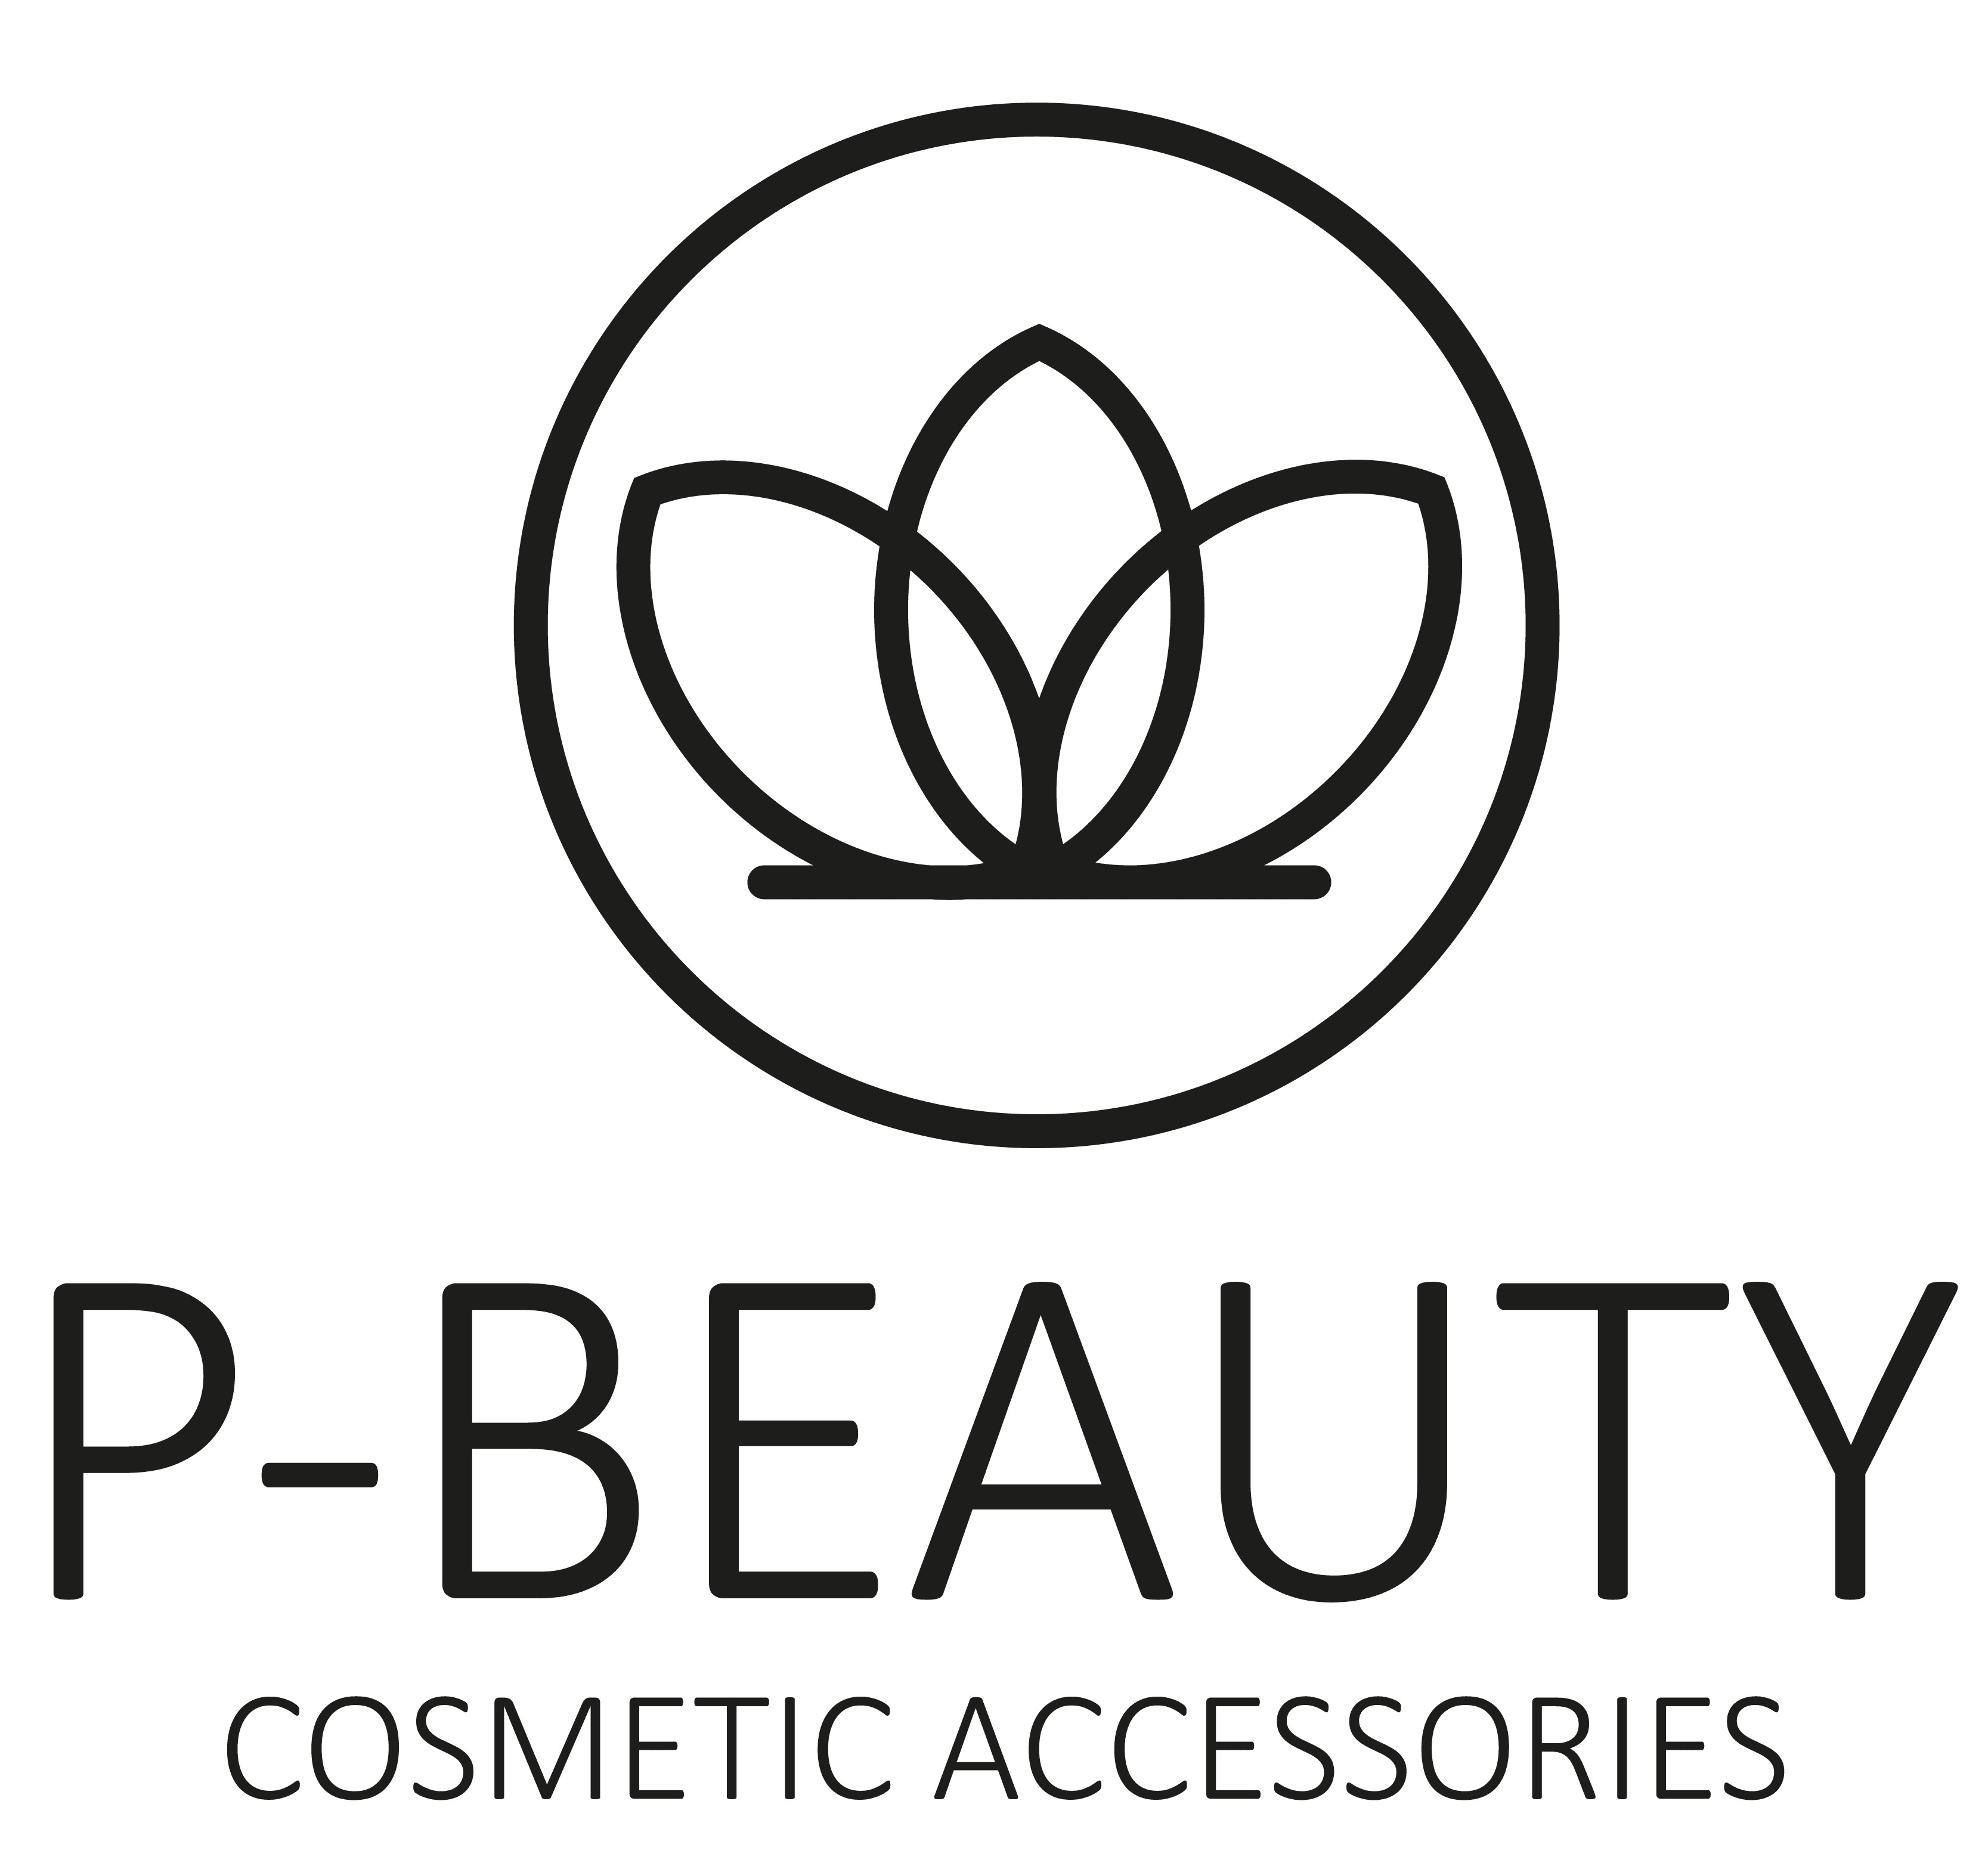 P-Beauty: Die aufstrebende Schönheitsmarke, die auf natürliche Schätze setzt